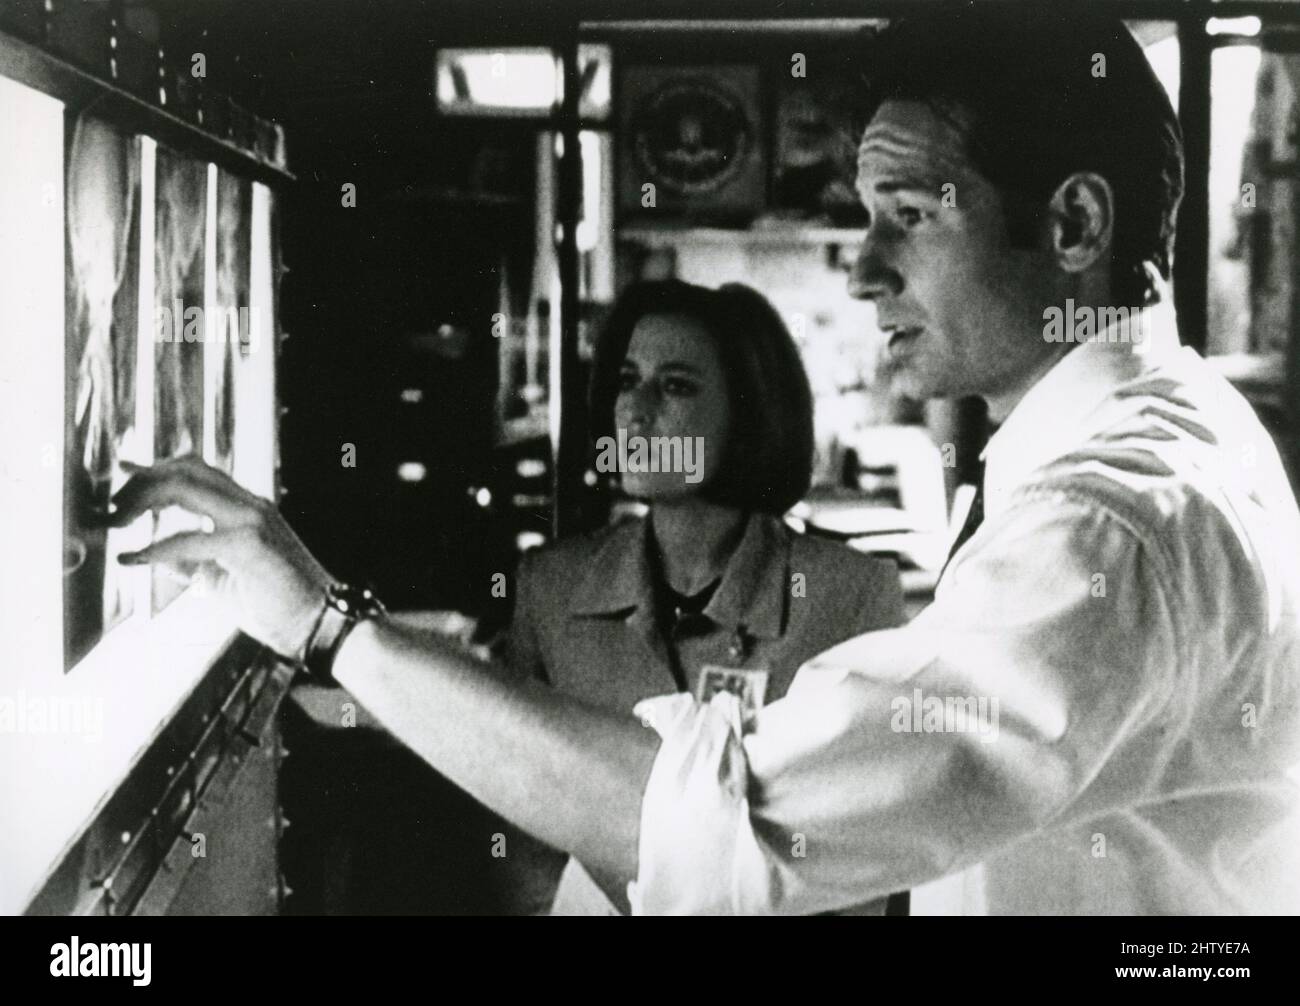 Acteur David Duchovny et actrice Gillian Anderson dans les films de télévision X-Files, USA 1997 Banque D'Images